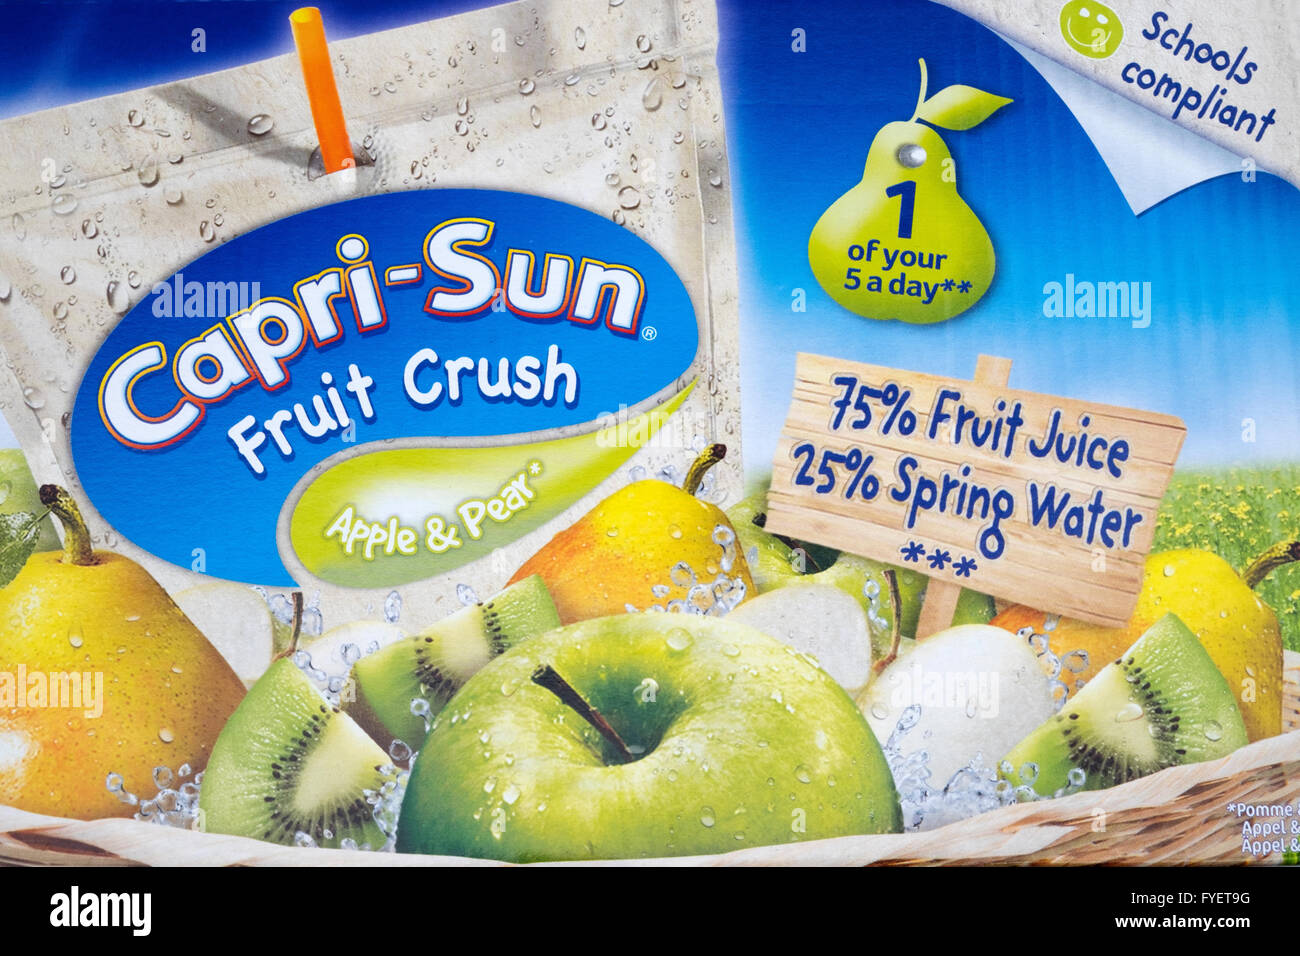 Capri-Sun mela e pera frutta drink di schiacciamento Foto Stock